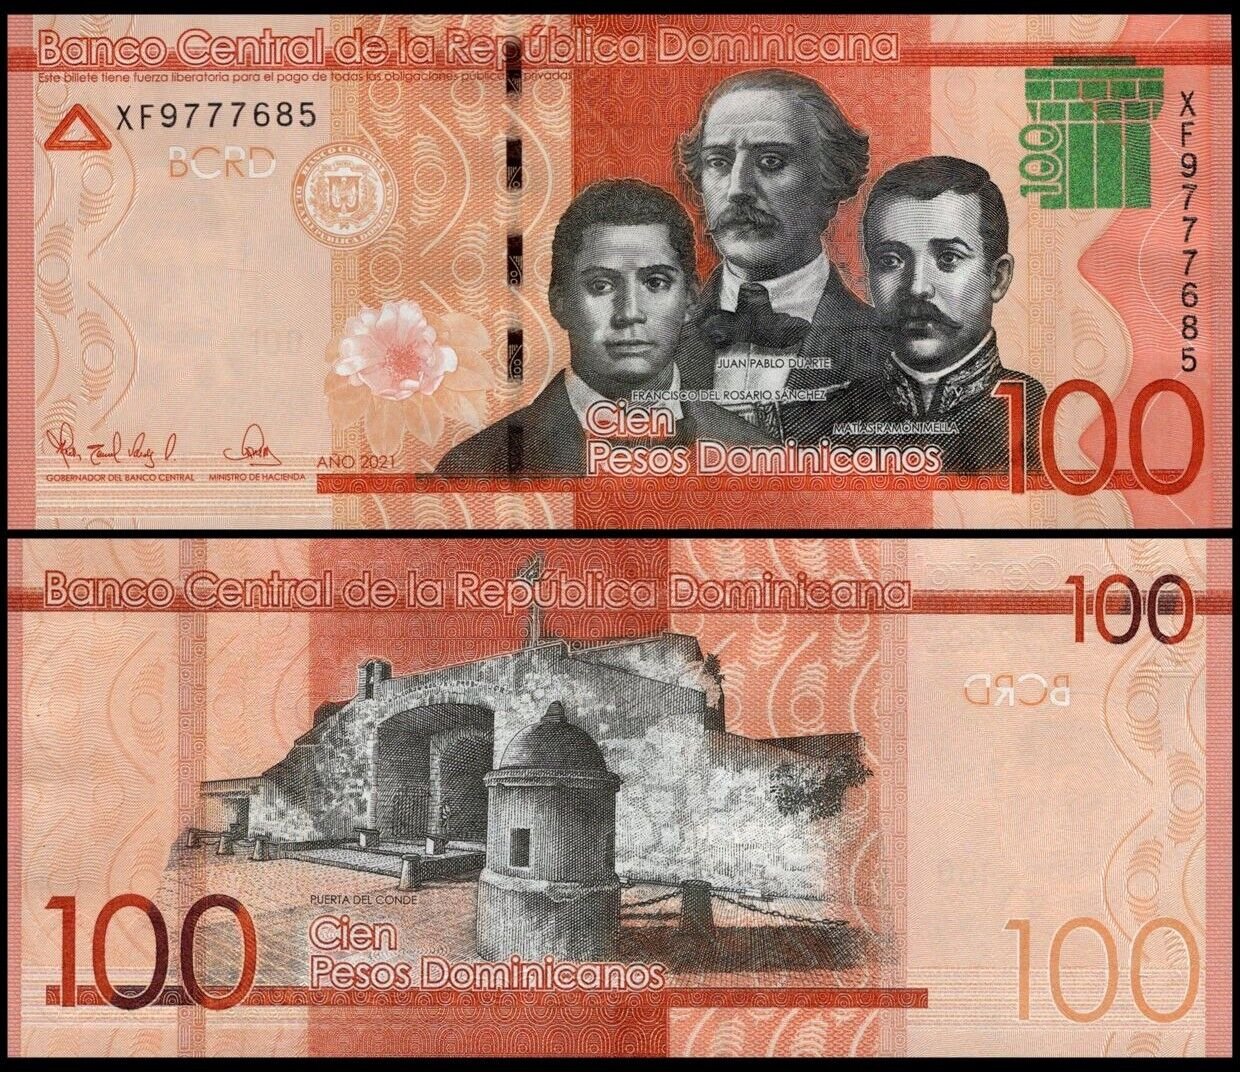 Republica Dominicana 2021 - 100 pesos UNC